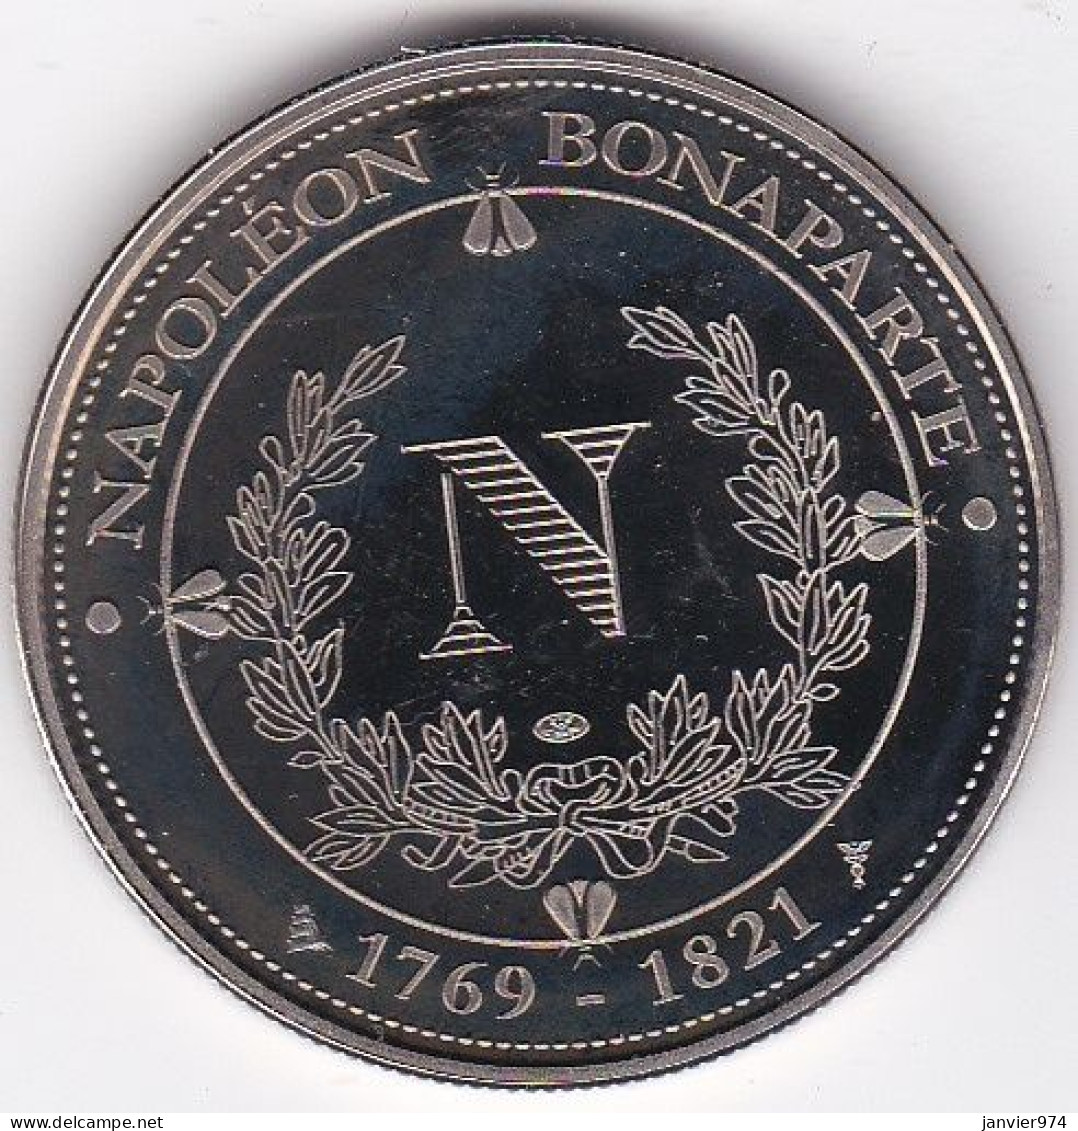 Medaille, Marechal Michel Ney 1769 - 1815, Napoléon Bonaparte - En Copper Nickel FDC - Professionals/Firms